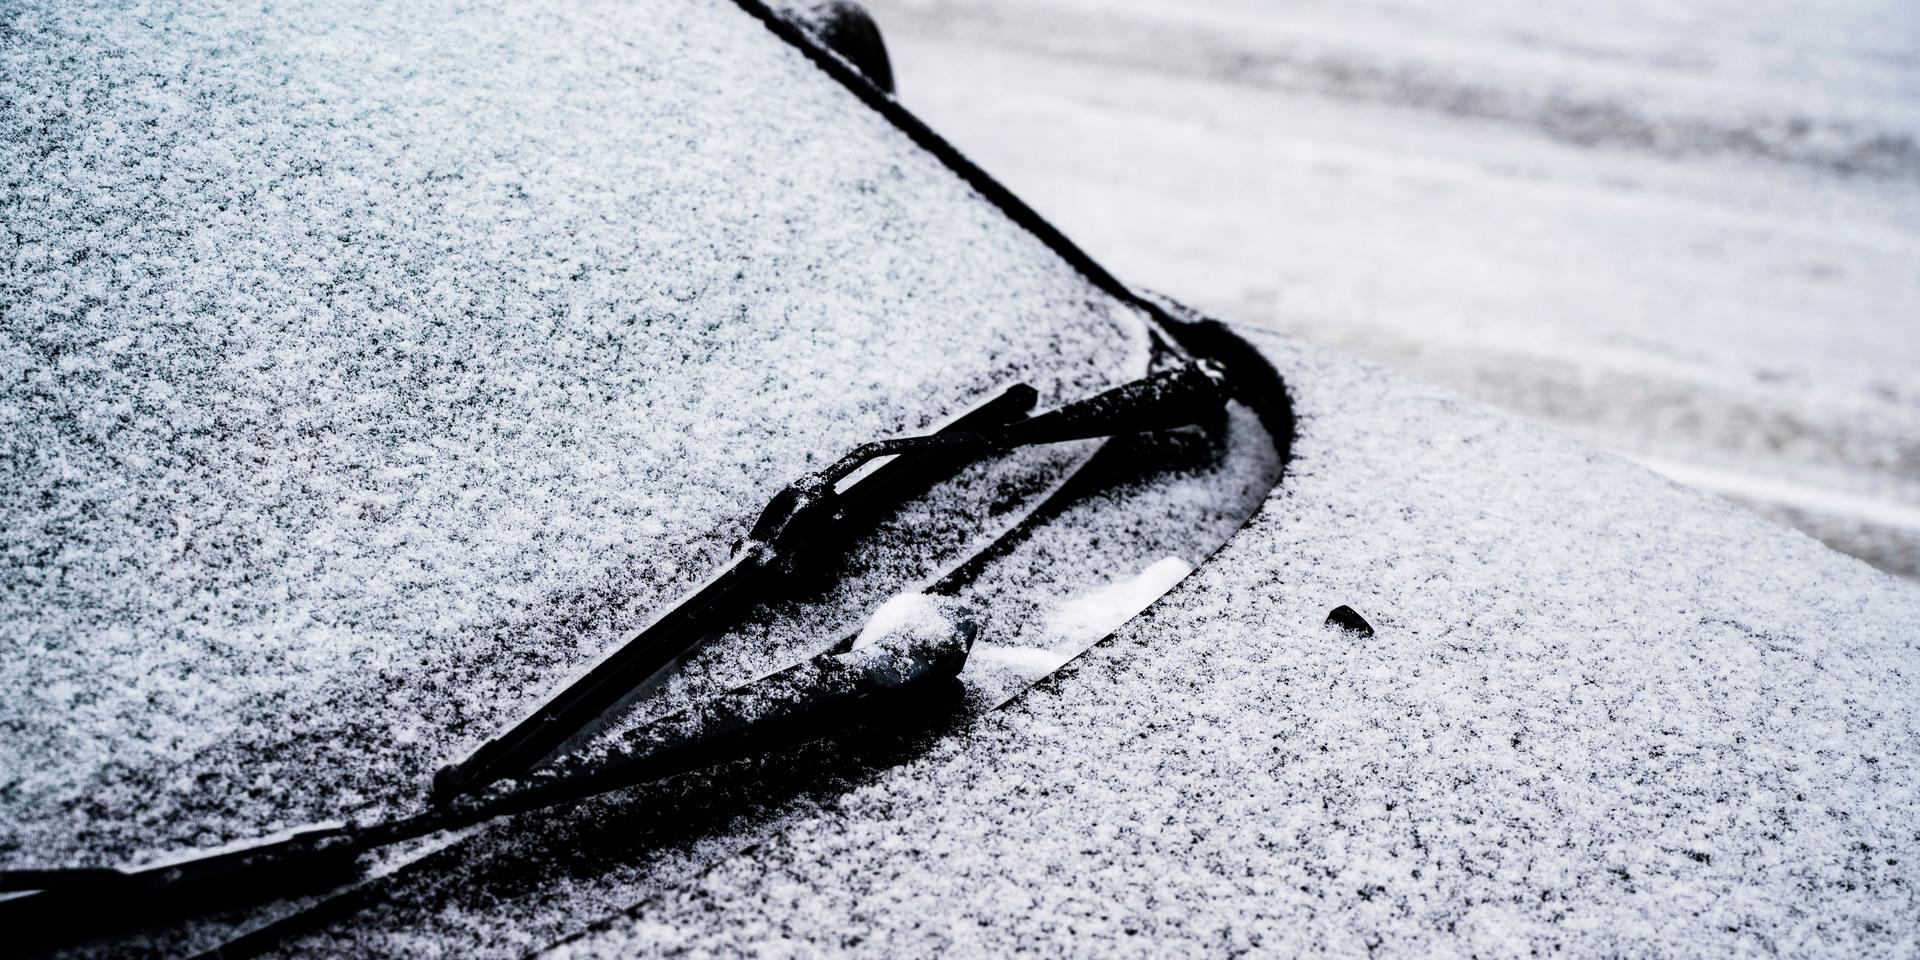 Den kalla polarluften drar in över Kungsbacka under helgen och kan ta med sig snö – men också lämna utrymme för några solglimtar. Det gäller dock att vara försiktig på vägarna, det kan bli riktig halt.